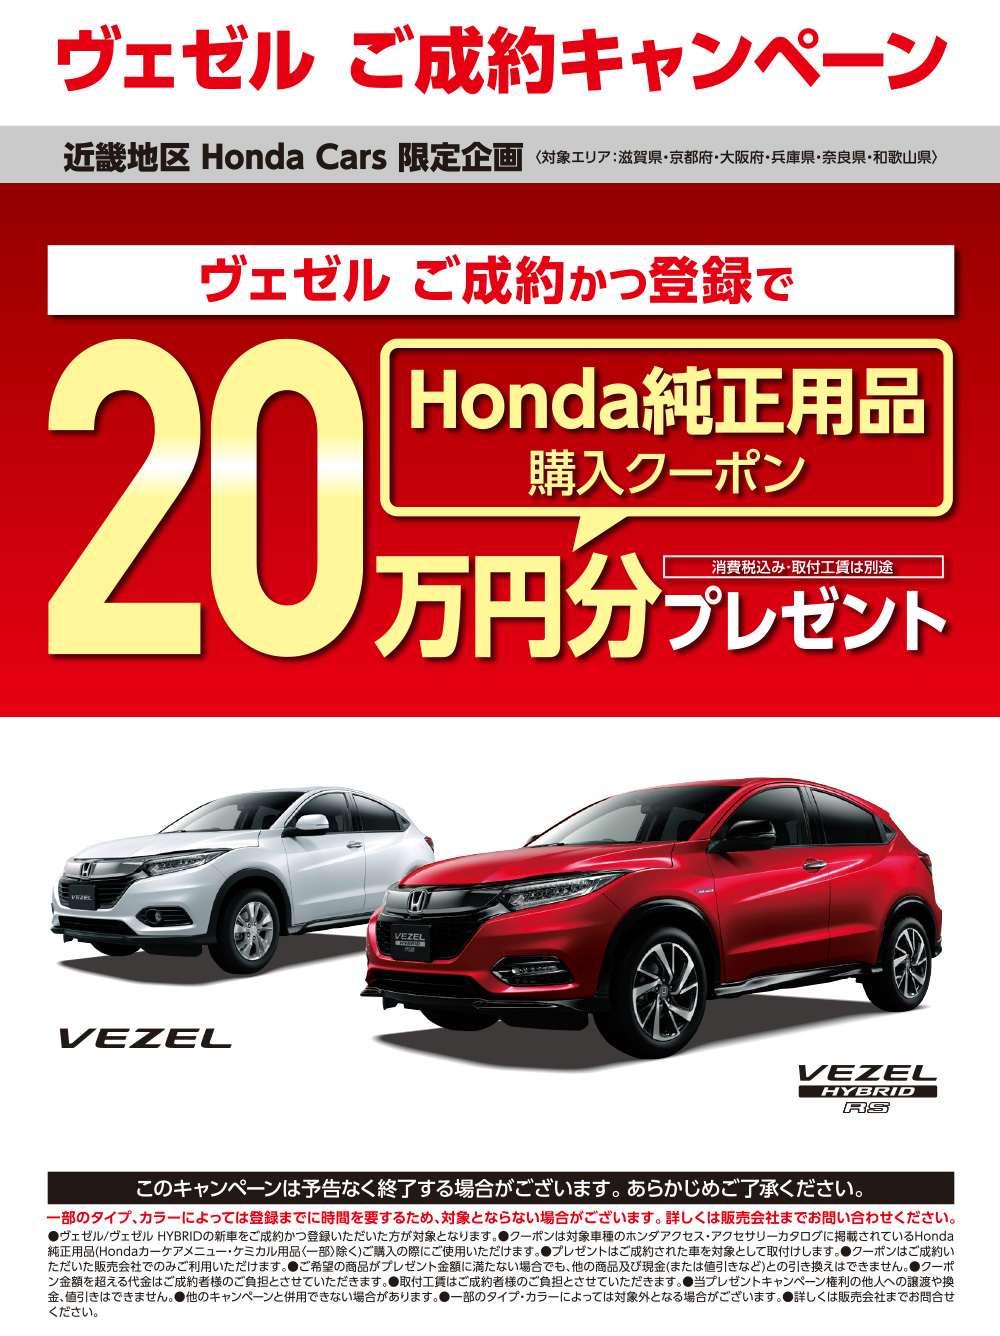 キャンペーン キャンペーン チラシ Honda Cars 泉州